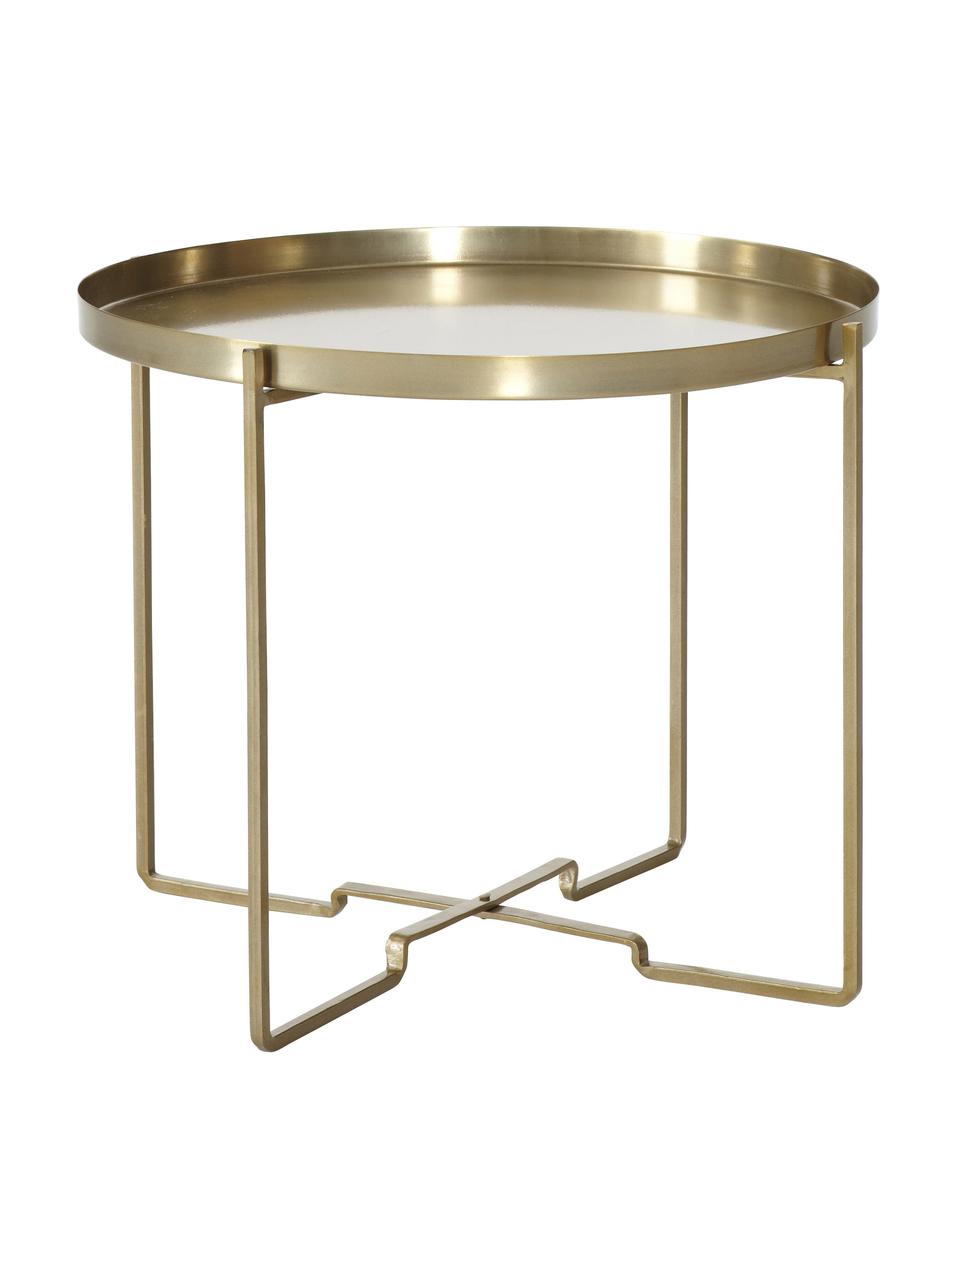 Table d'appoint ronde métal finition dorée George, Métal, enduit, Couleur dorée, Ø 57 x haut. 48 cm